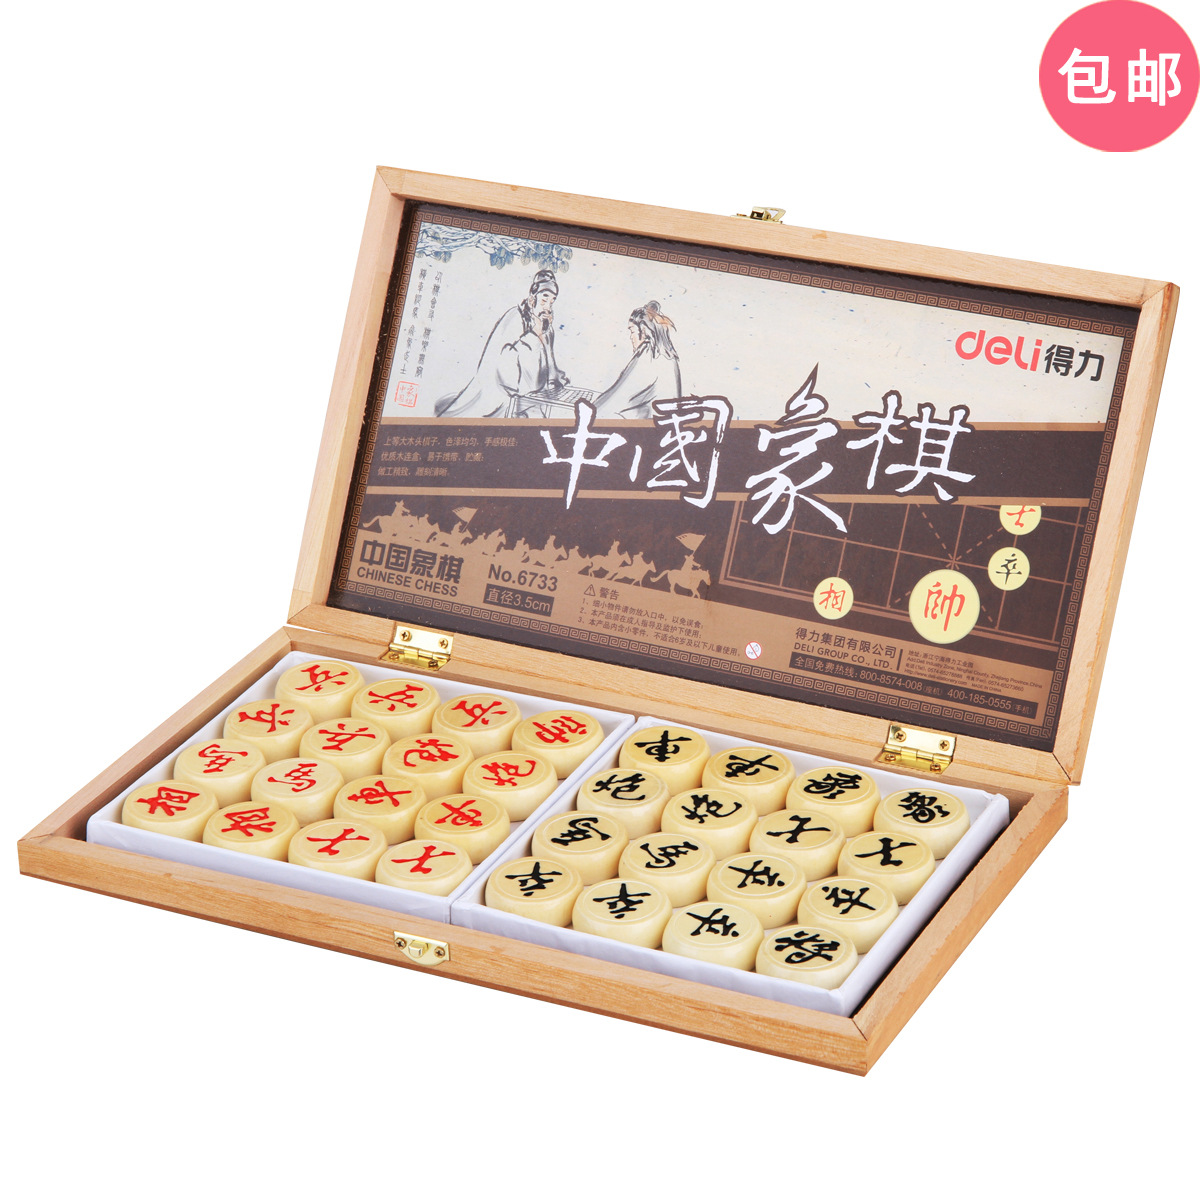 得力6734木质中国象棋优质贴纸木头盒 套装娱乐教材 棋子棋盘